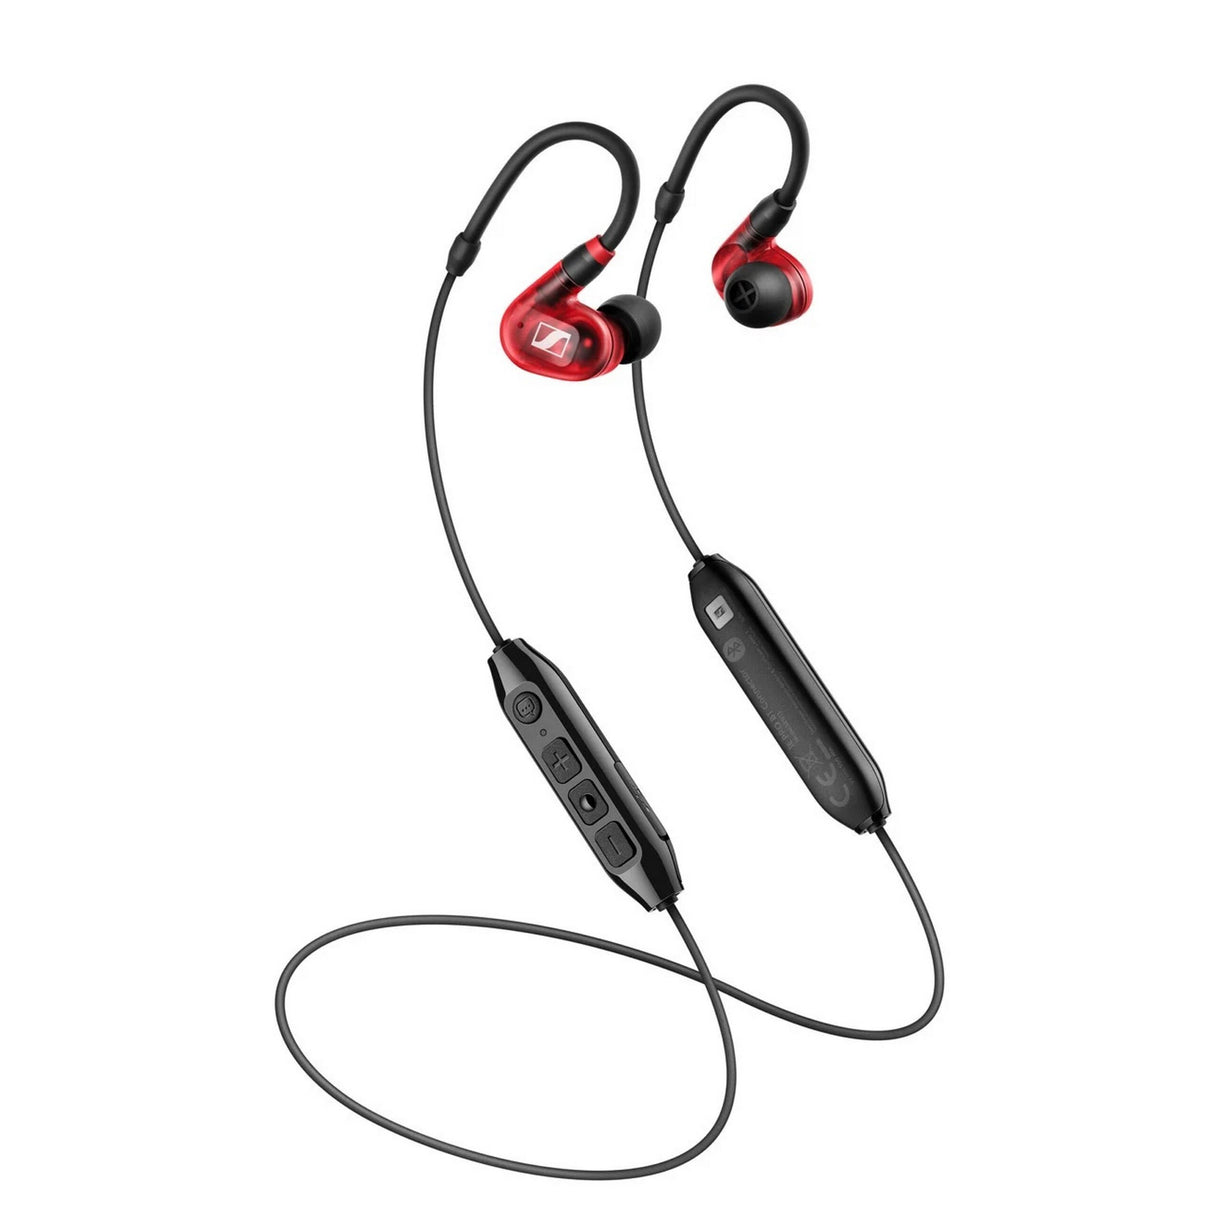 Sennheiser IE 100 PRO Wireless In-Ear Monitoring Headphone, Red